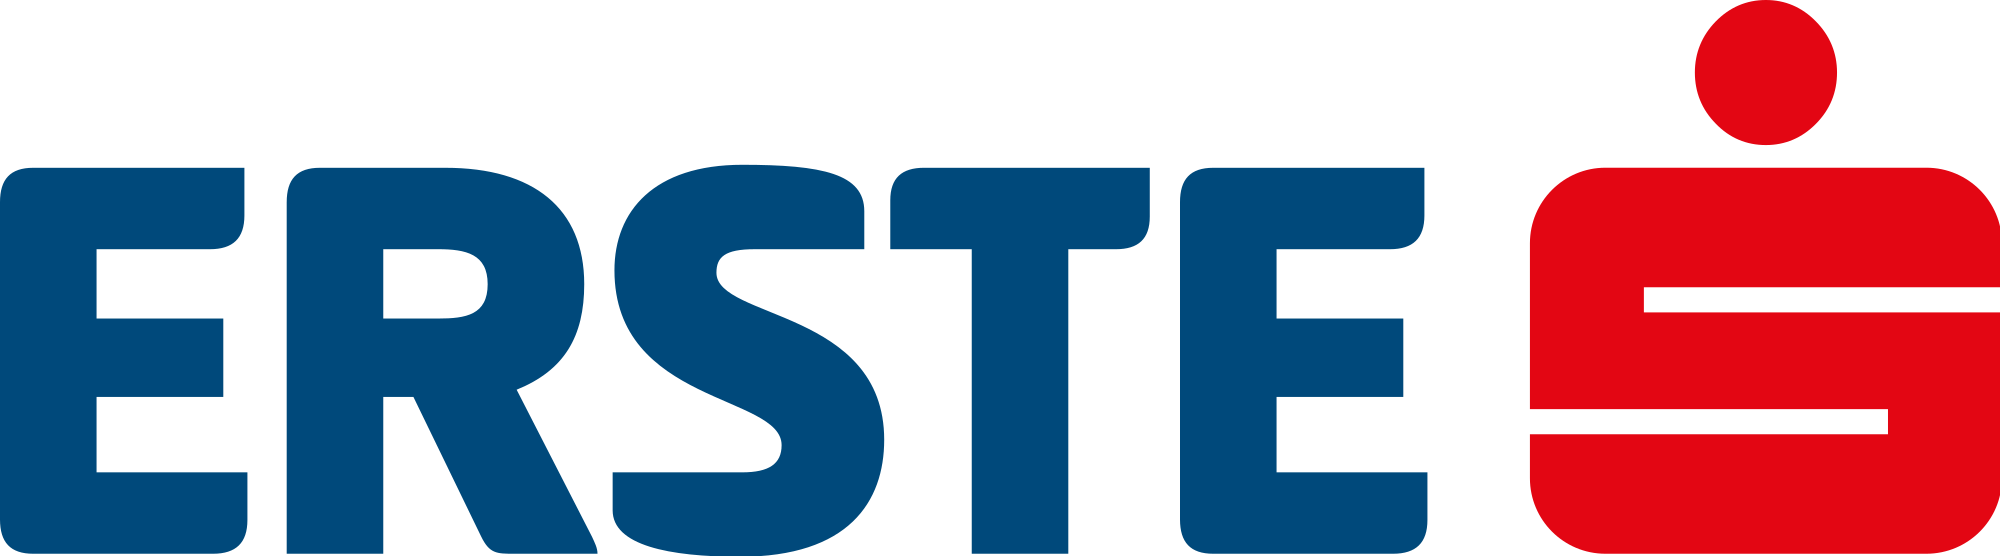 Yeni Neos Genel Başkanı, Merkez Görüşün Sesi Olmak - Erste Group Logo Png (2000x556)